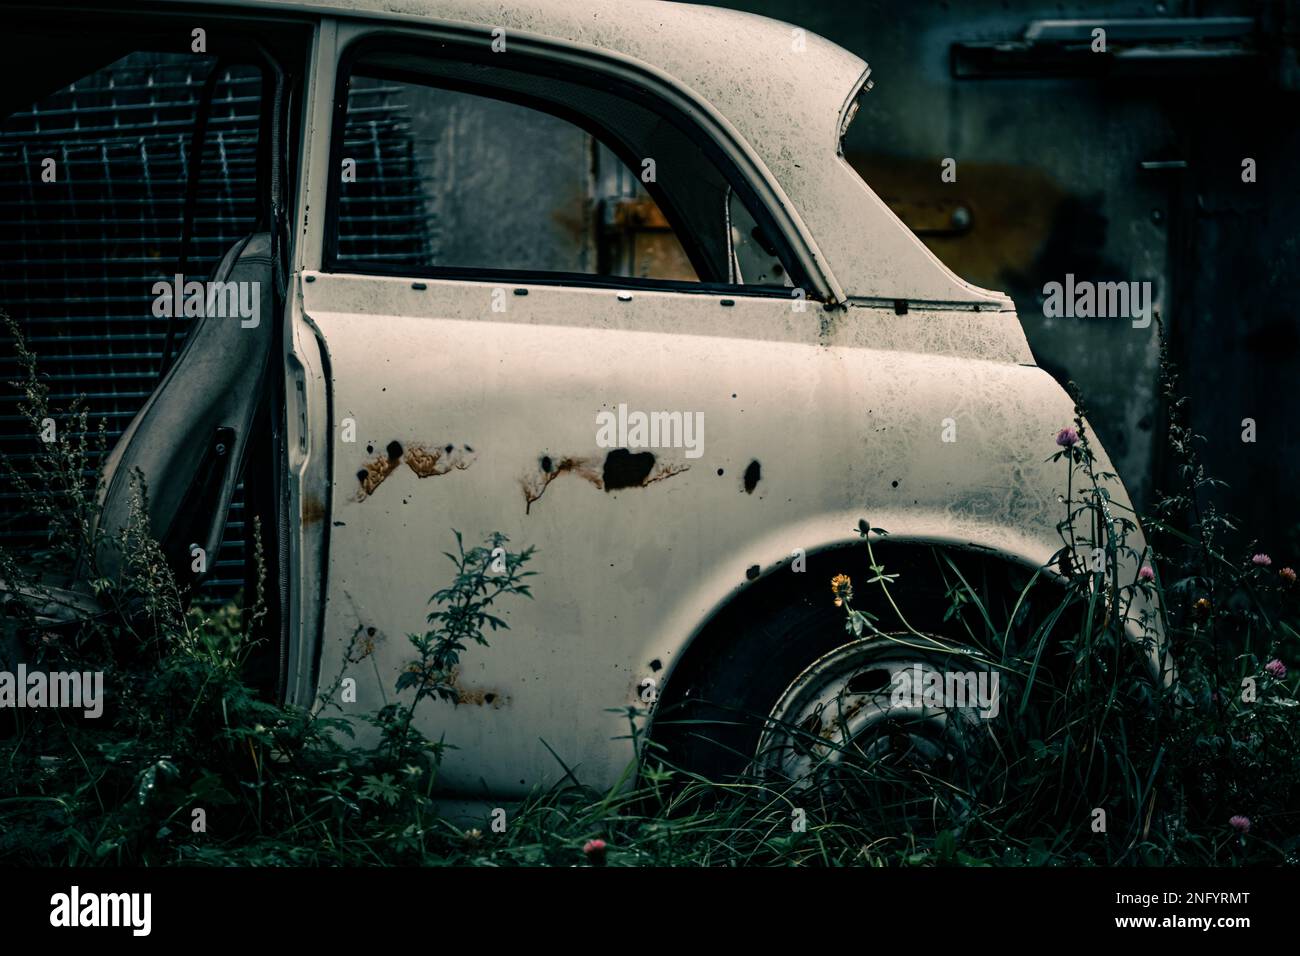 Una bella vista di una vecchia macchina bianca abbandonata rotta in una zona verduosa Foto Stock